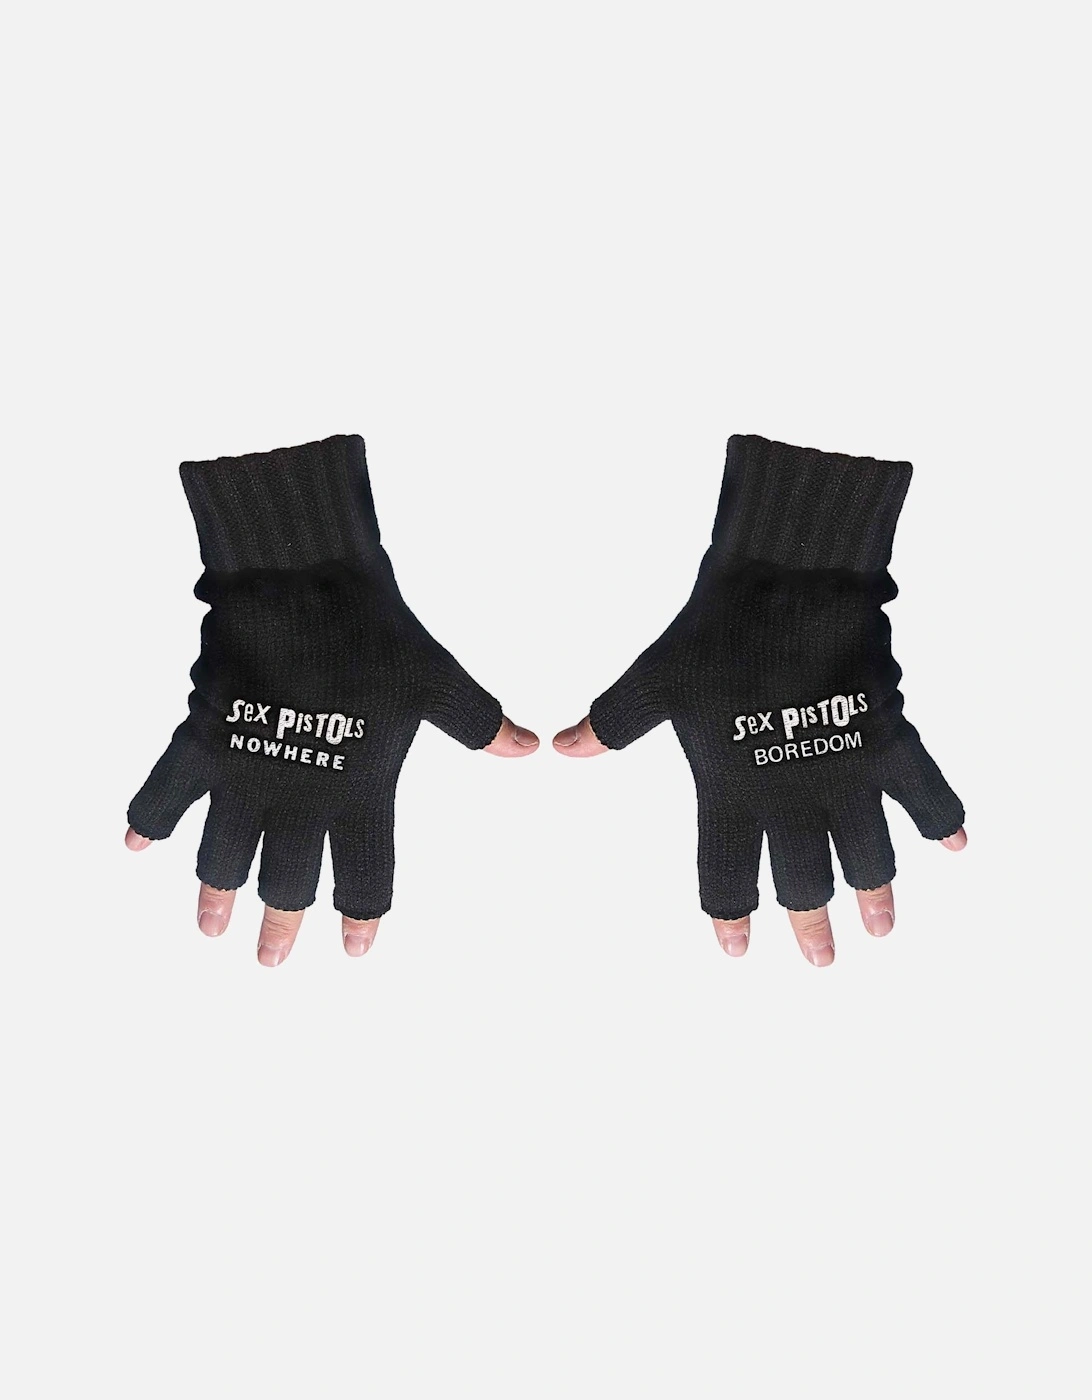 Unisex Adult Nowhere & Boredom Fingerless Gloves, 2 of 1